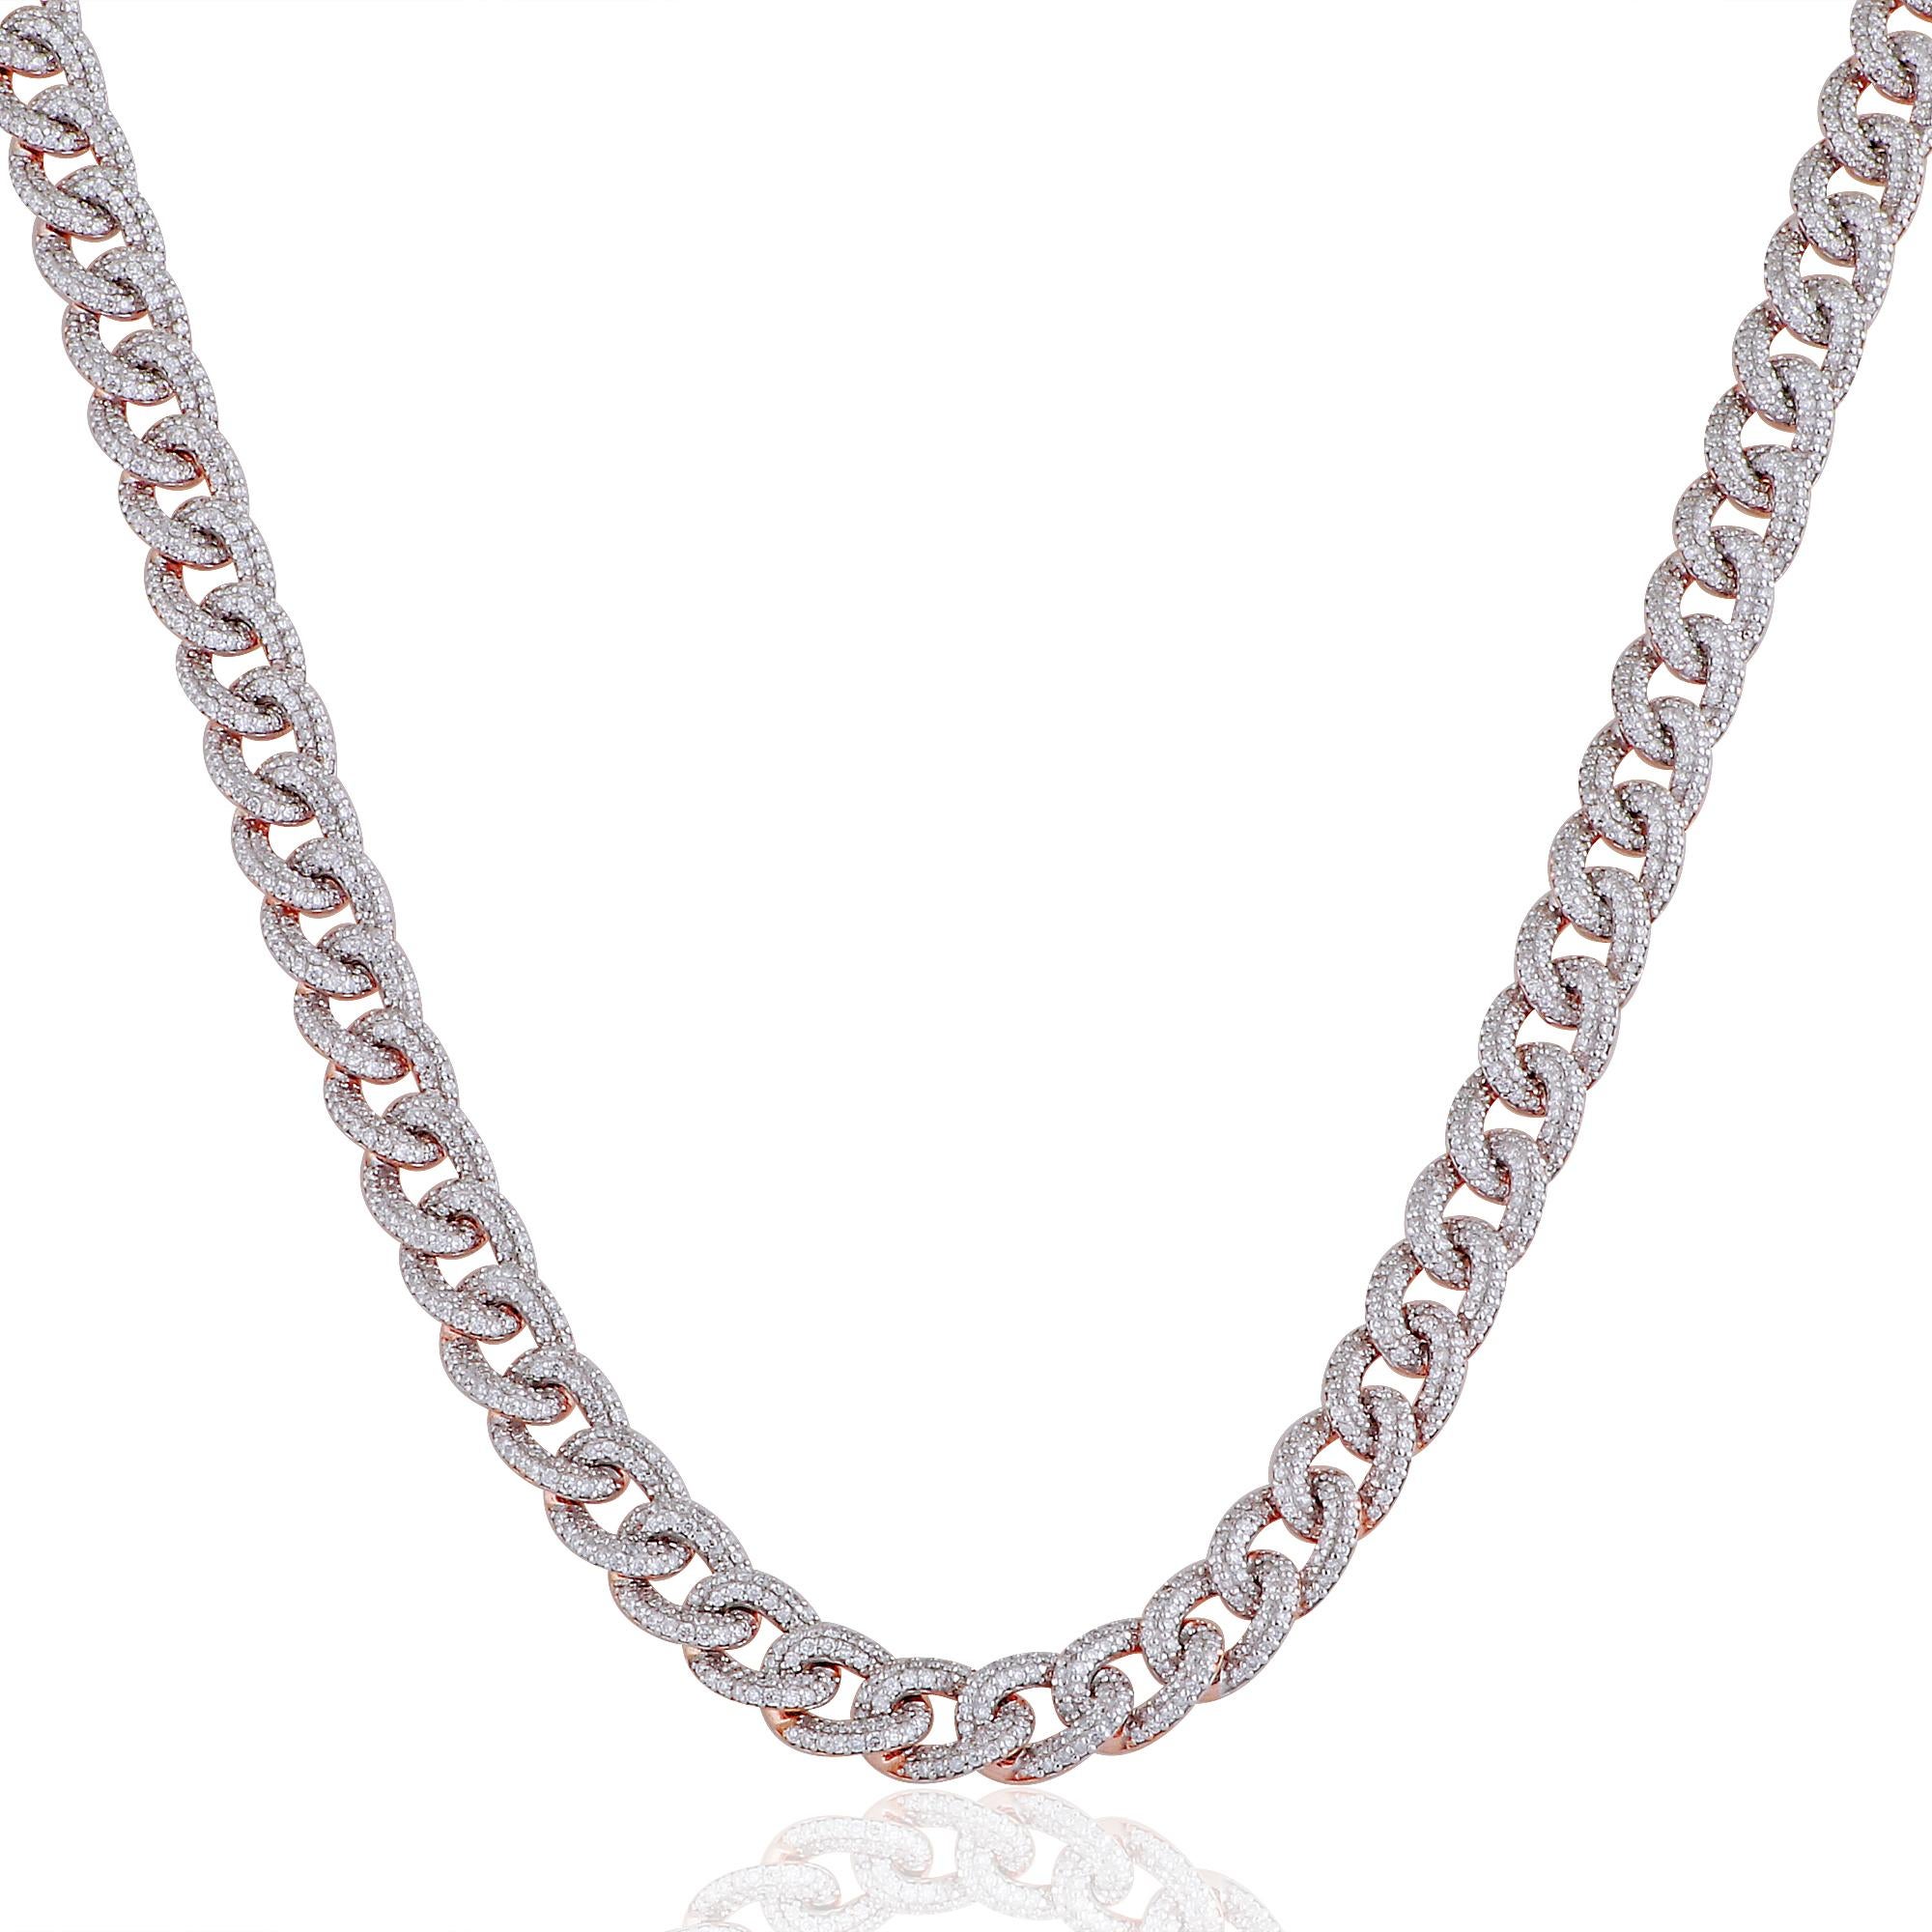 Erhöhen Sie Ihren Stil und hinterlassen Sie einen bleibenden Eindruck mit dieser SI/HI Diamond Pave Cuban Link Chain Necklace. Sie ist ein Zeugnis für außergewöhnliche Handwerkskunst, zeitlose Eleganz und die dauerhafte Schönheit von edlem Schmuck.